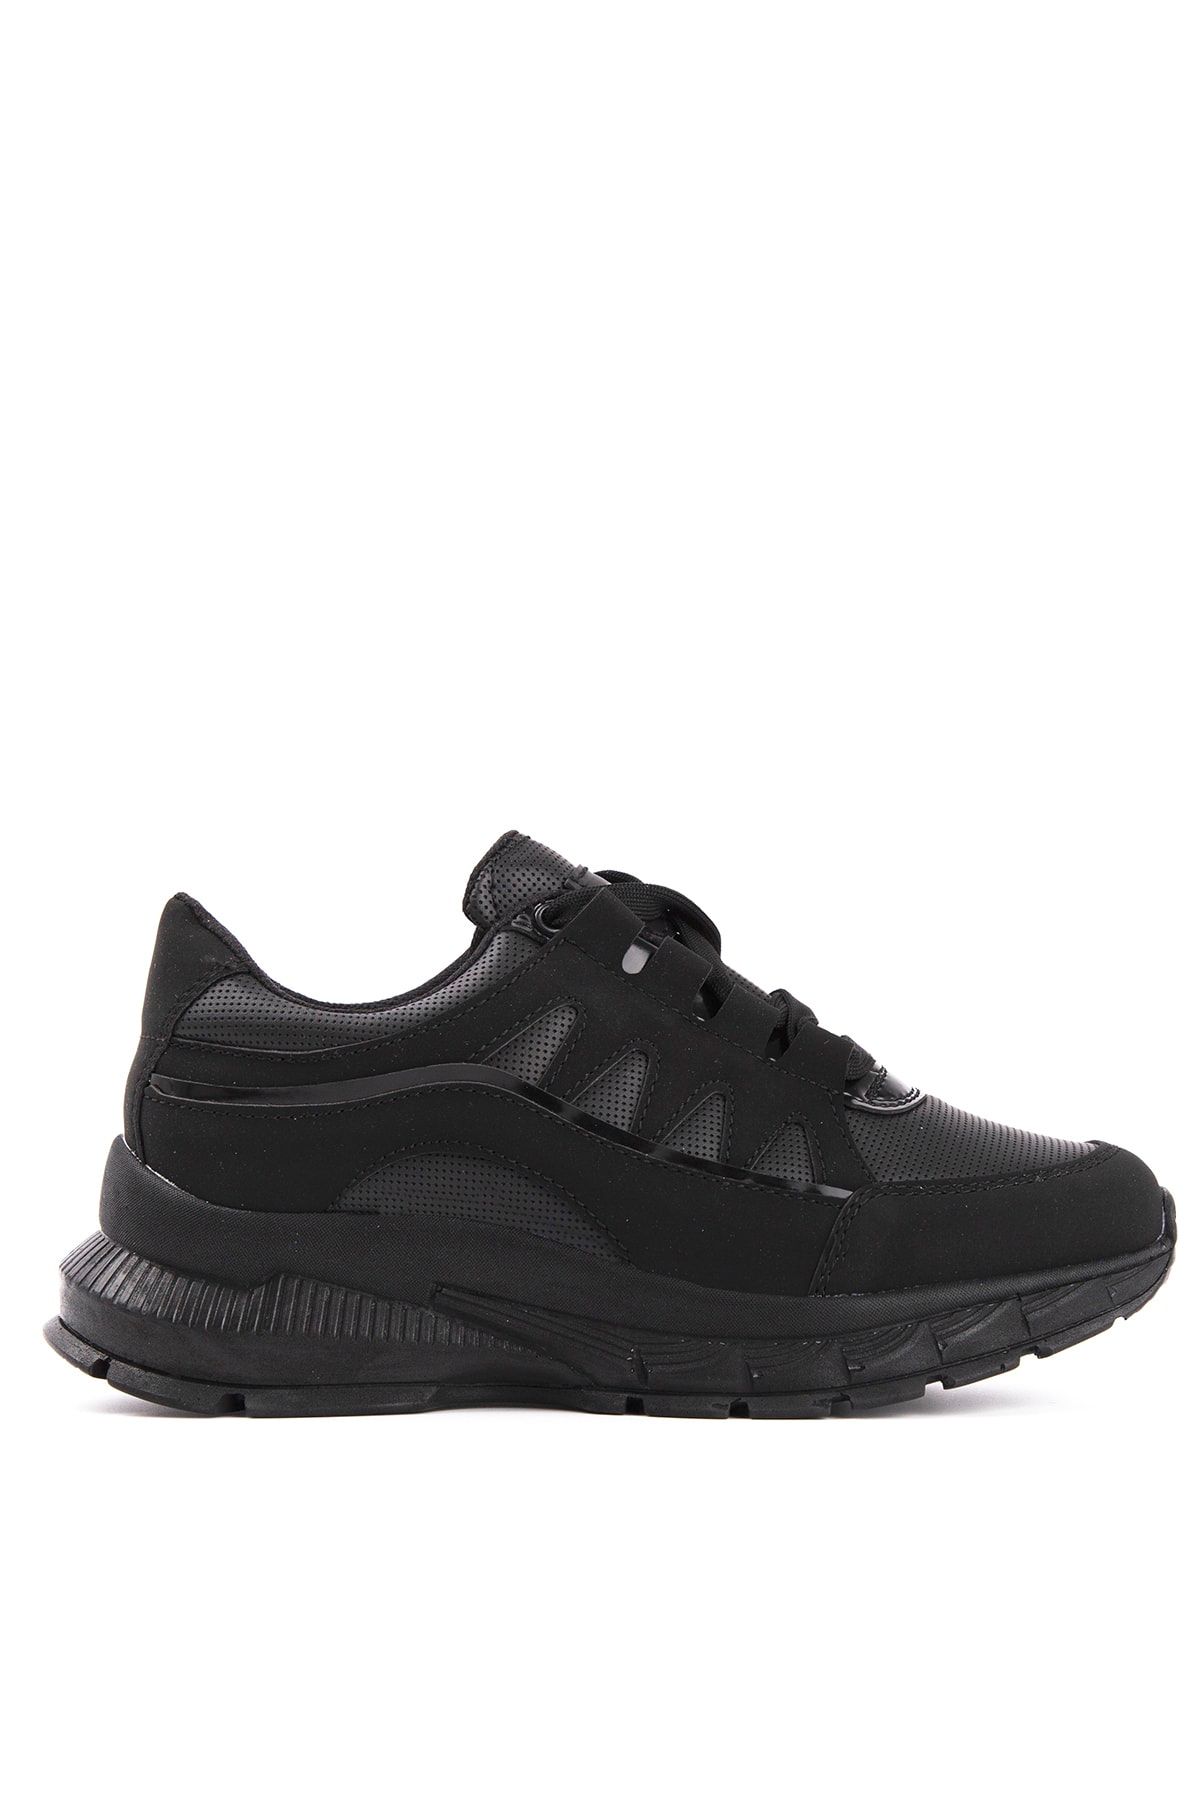 Slazenger Kelsy Sneaker Kadın Ayakkabı Siyah Sa20rk010